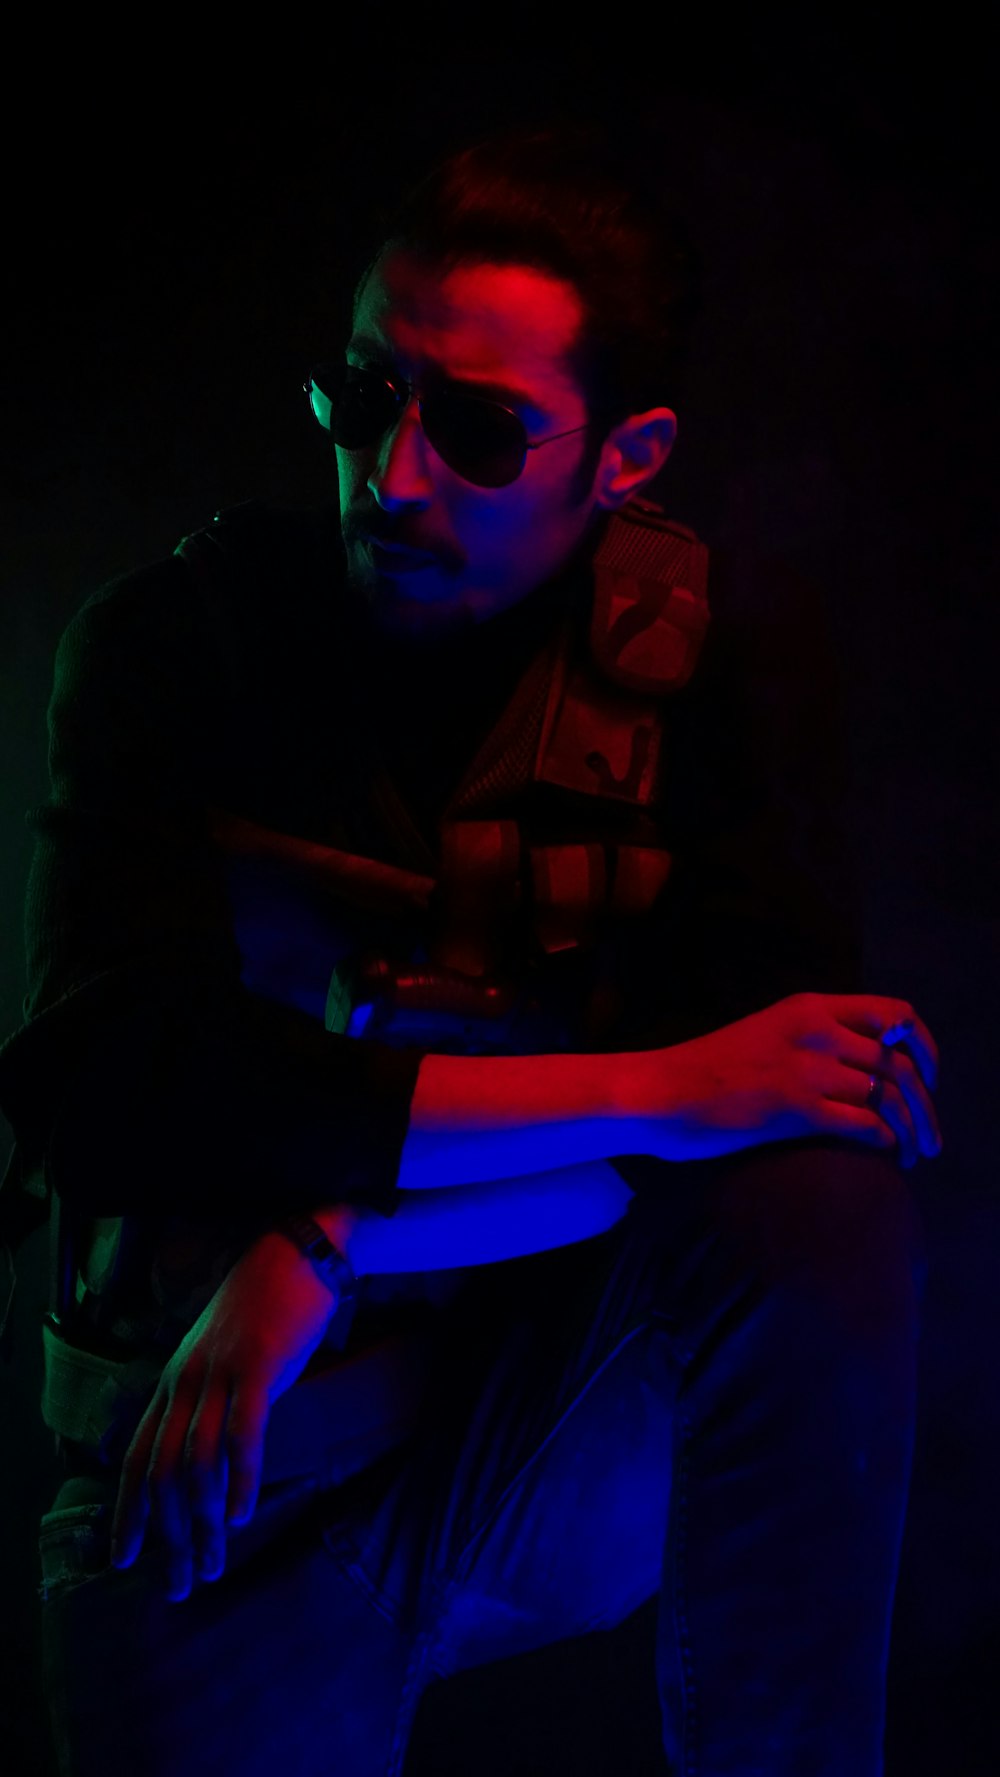 Un hombre sentado en la oscuridad con los brazos cruzados